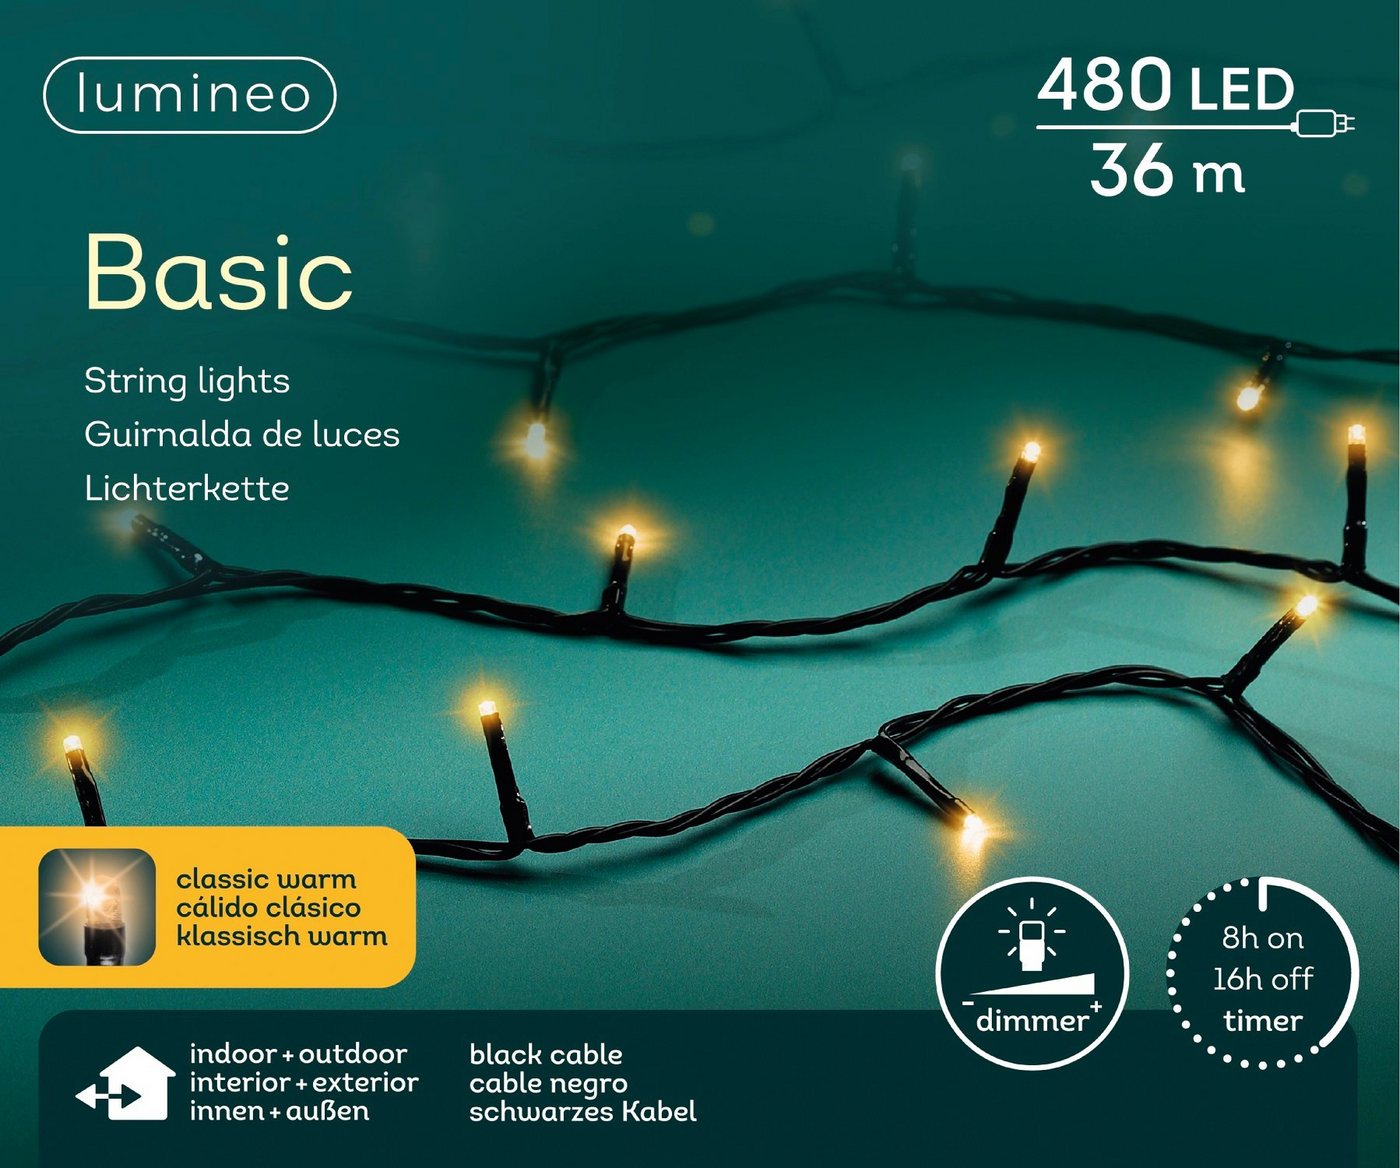 Lumineo LED-Lichterkette Lumineo Lichterkette Basic 480 LED 36m klassisch warm, schwarzes Kabel, Dimmbar, Timer, Indoor, Outdoor von Lumineo